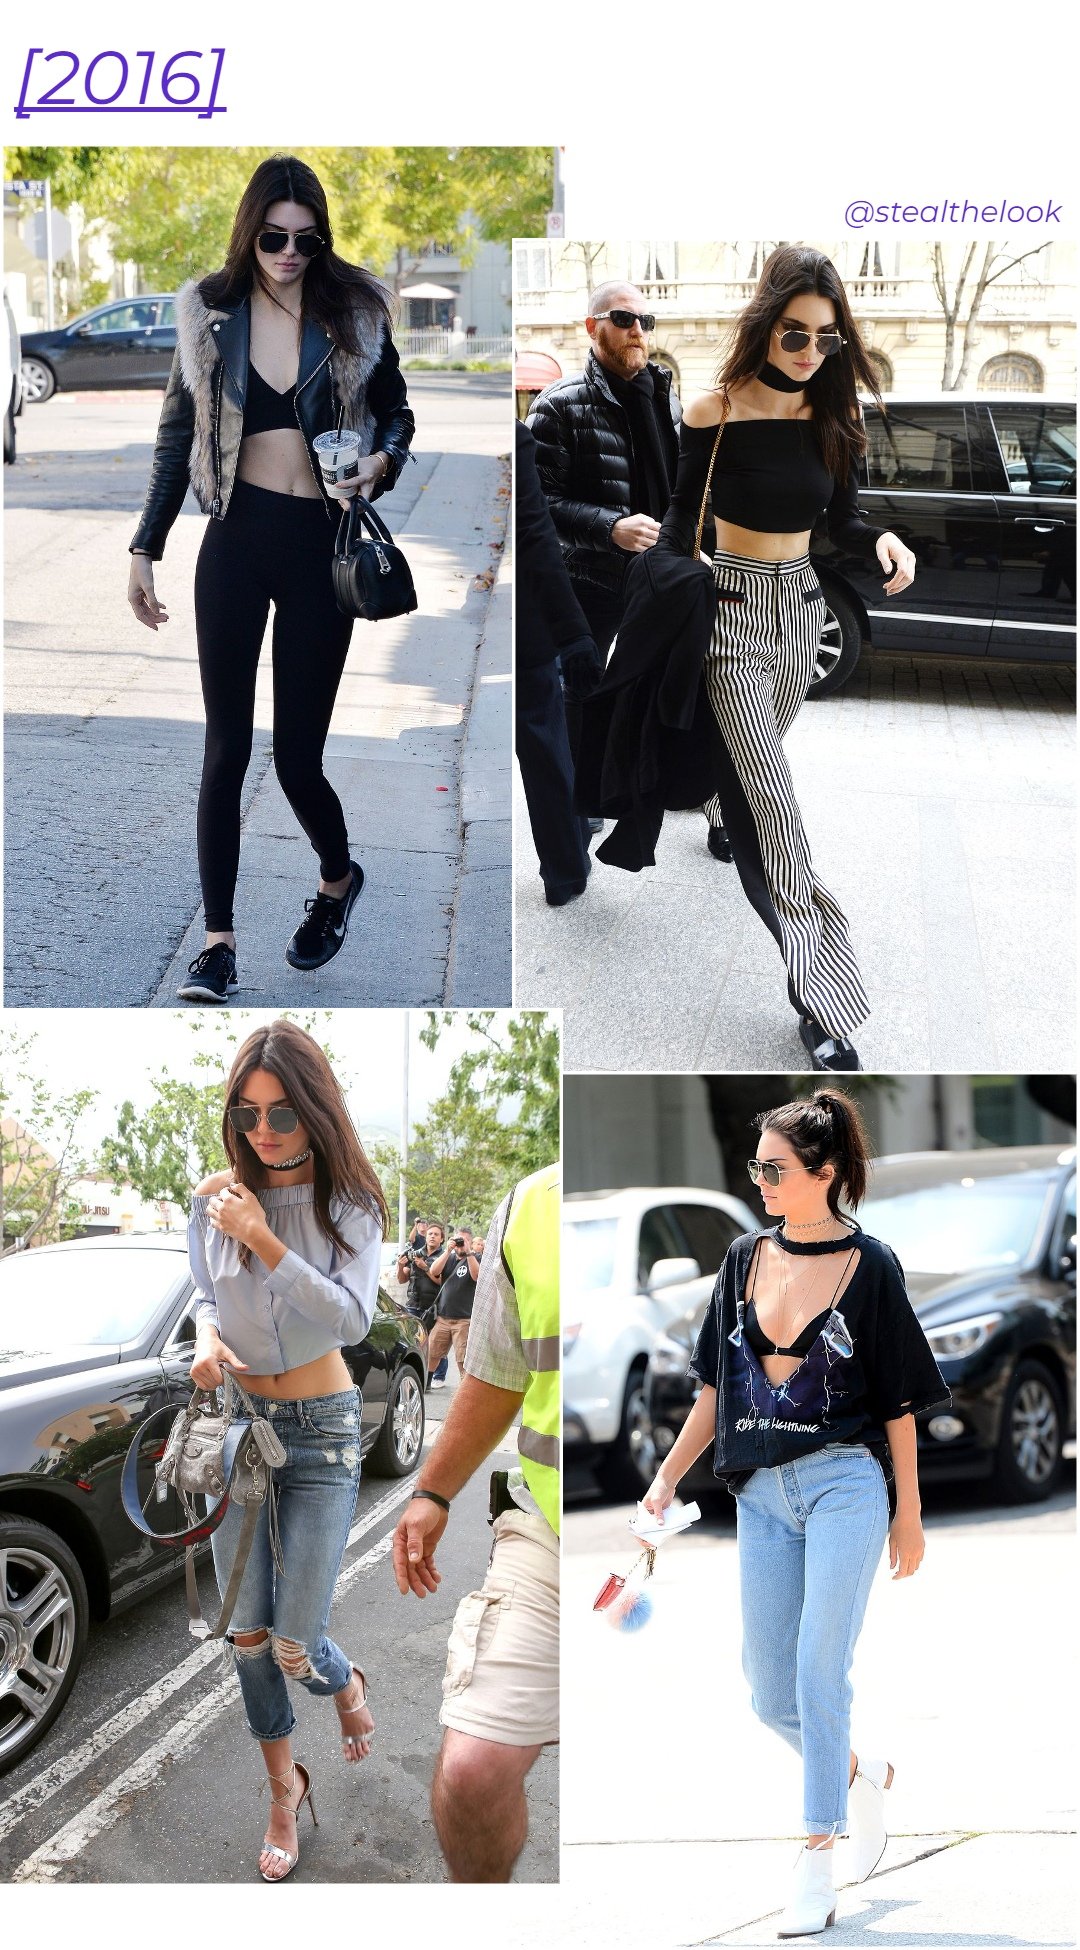 Kendall Jenner - roupas diversas - Kendall Jenner - primavera - colagem com 4 fotos diferentes da modelo andando - https://stealthelook.com.br